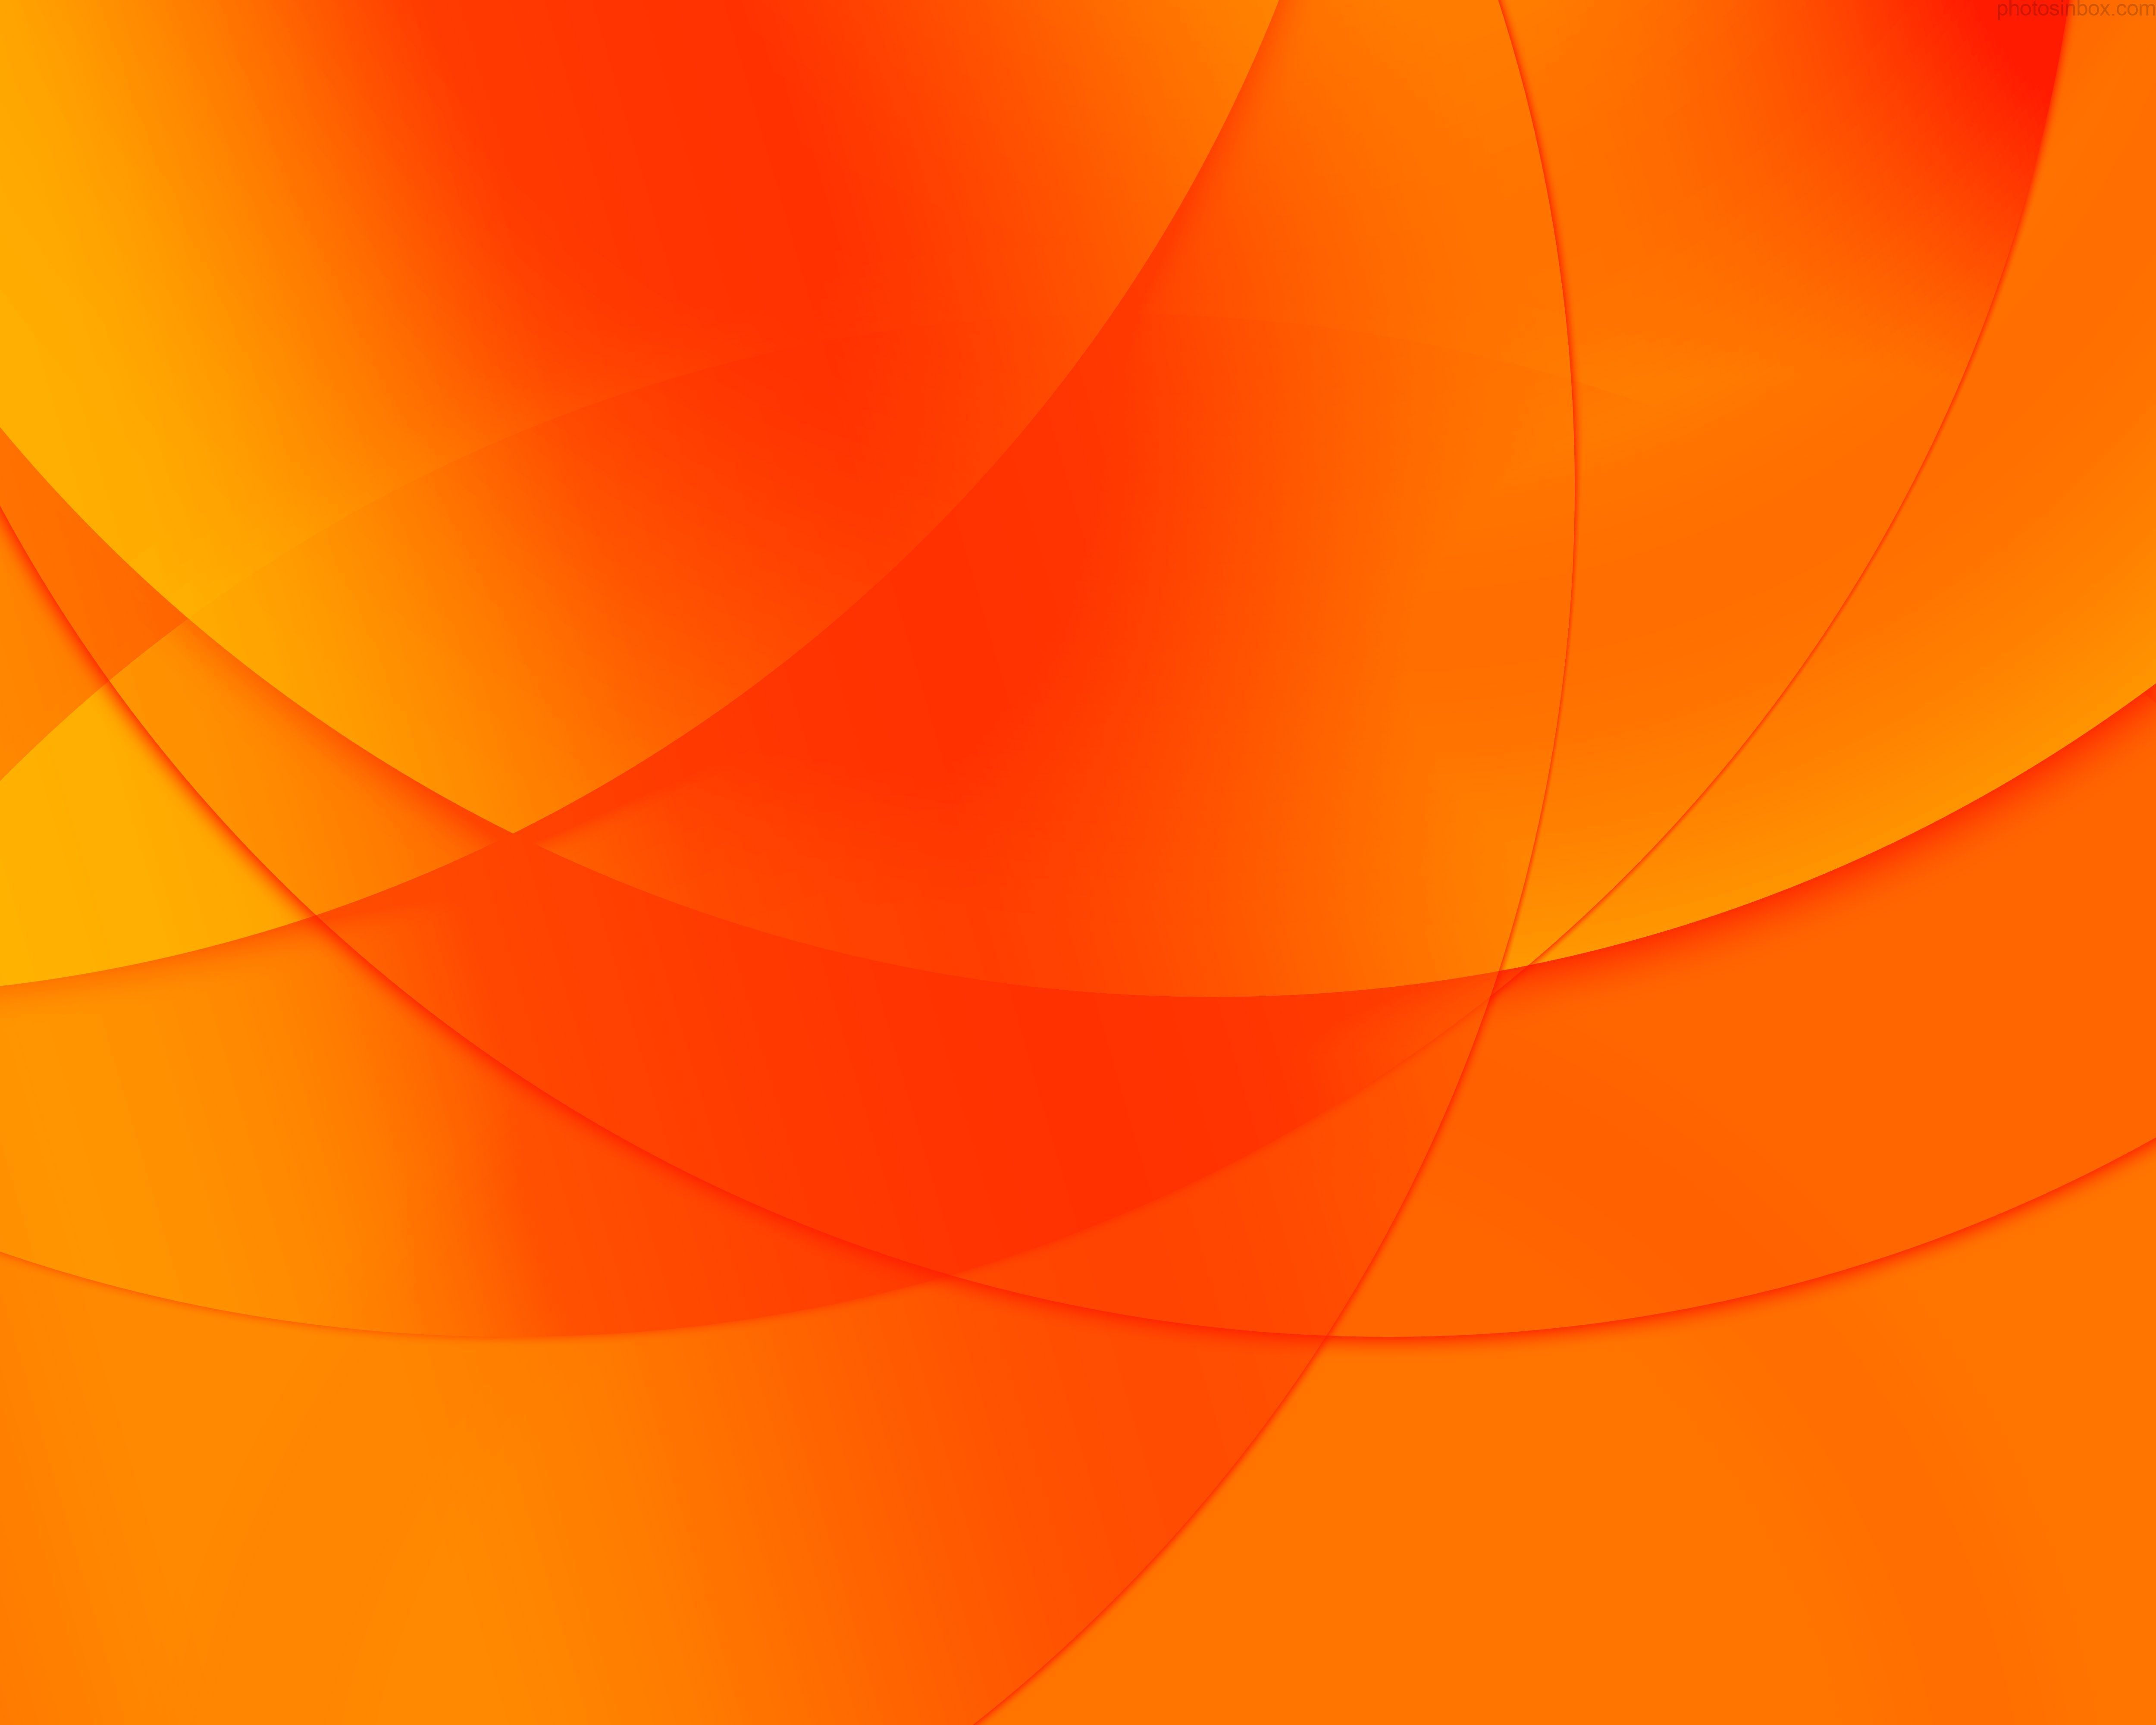 Hình nền với màu cam đơn sắc đơn giản mà vô cùng ấm áp. Với sự tươi sáng và đầy sức sống của màu sắc, hình nền này sẽ giúp bạn cảm thấy sảng khoái và vui vẻ. Nhấp vào hình ảnh để tải ngay hình nền màu cam đơn sắc này cho điện thoại của bạn.